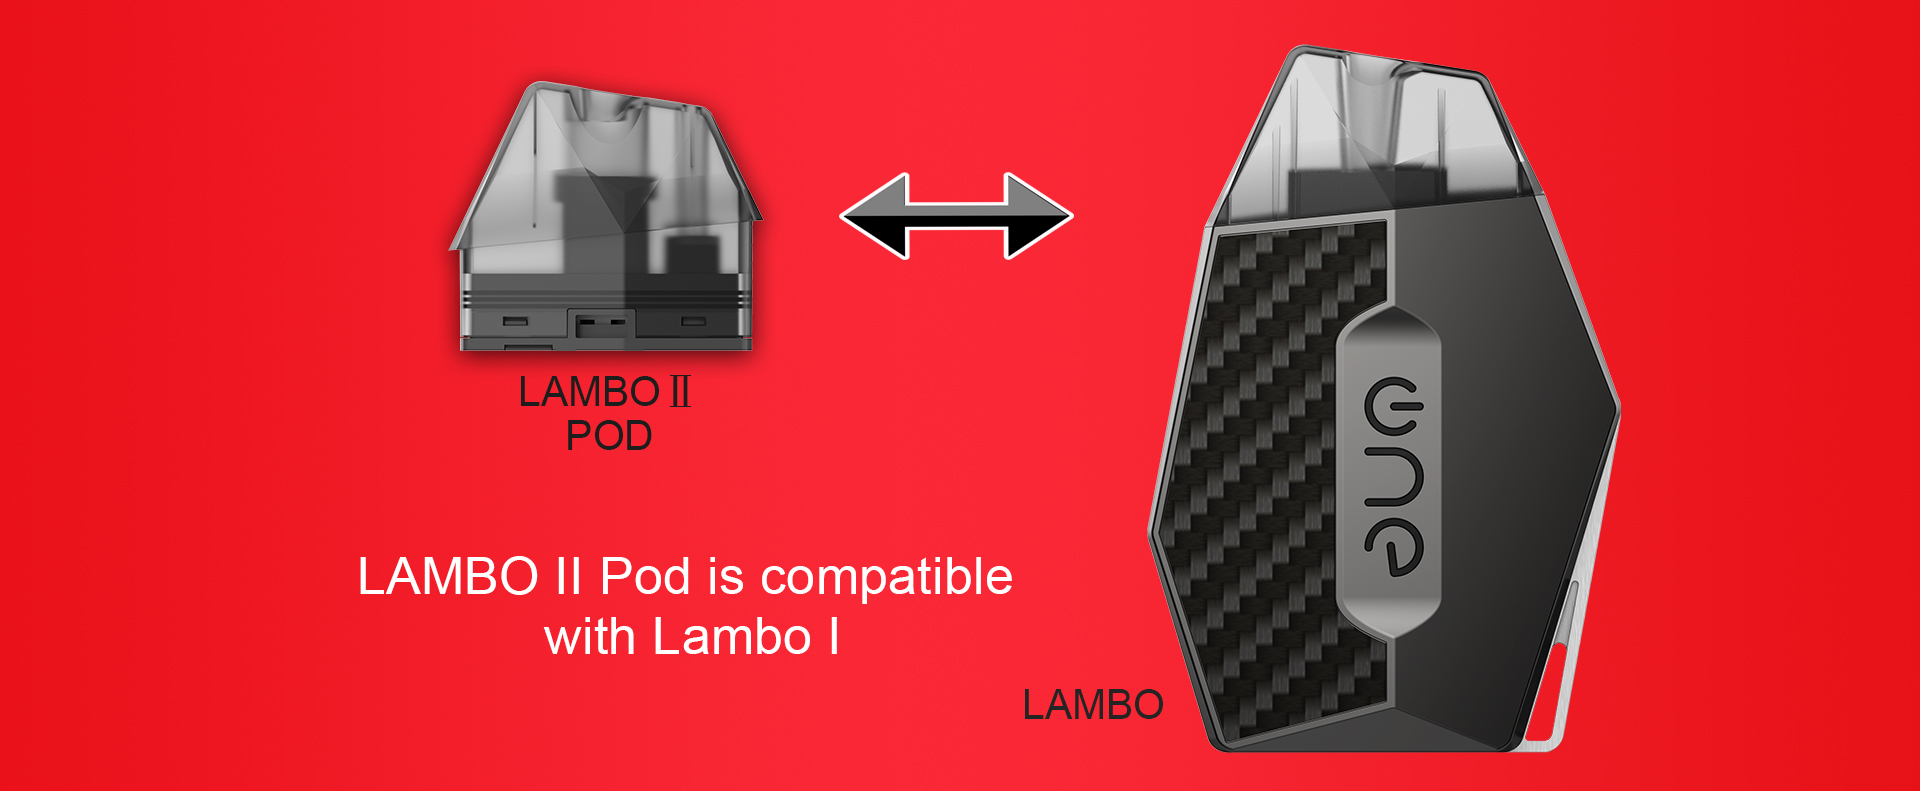 lambo-2英文-副本_03.jpg